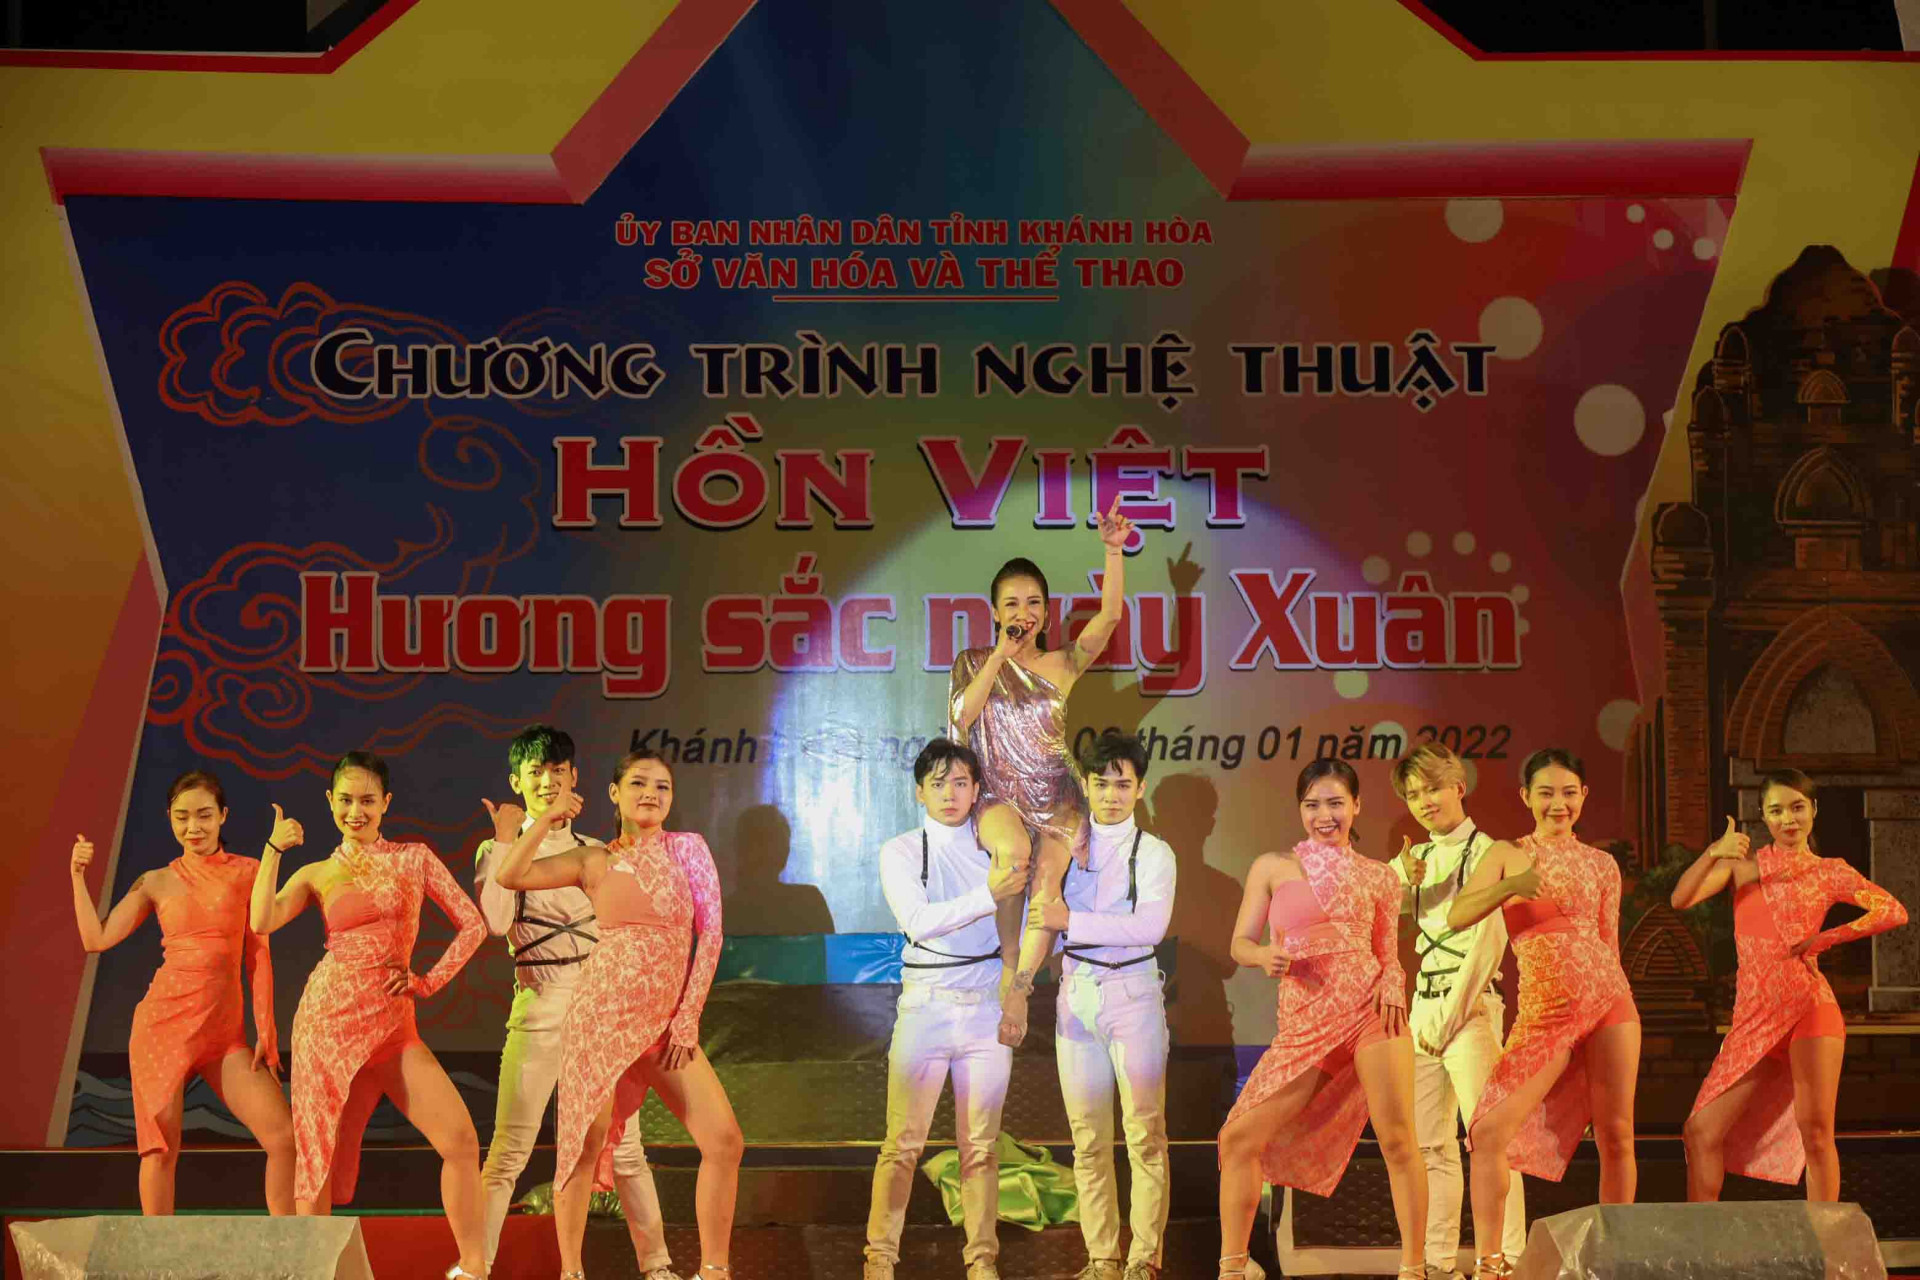 Tiết mục biểu diễn trẻ trung, sôi động trong chương trình Hồn Việt - Hương sắc mùa xuân diễn ra đầu năm 2022. 